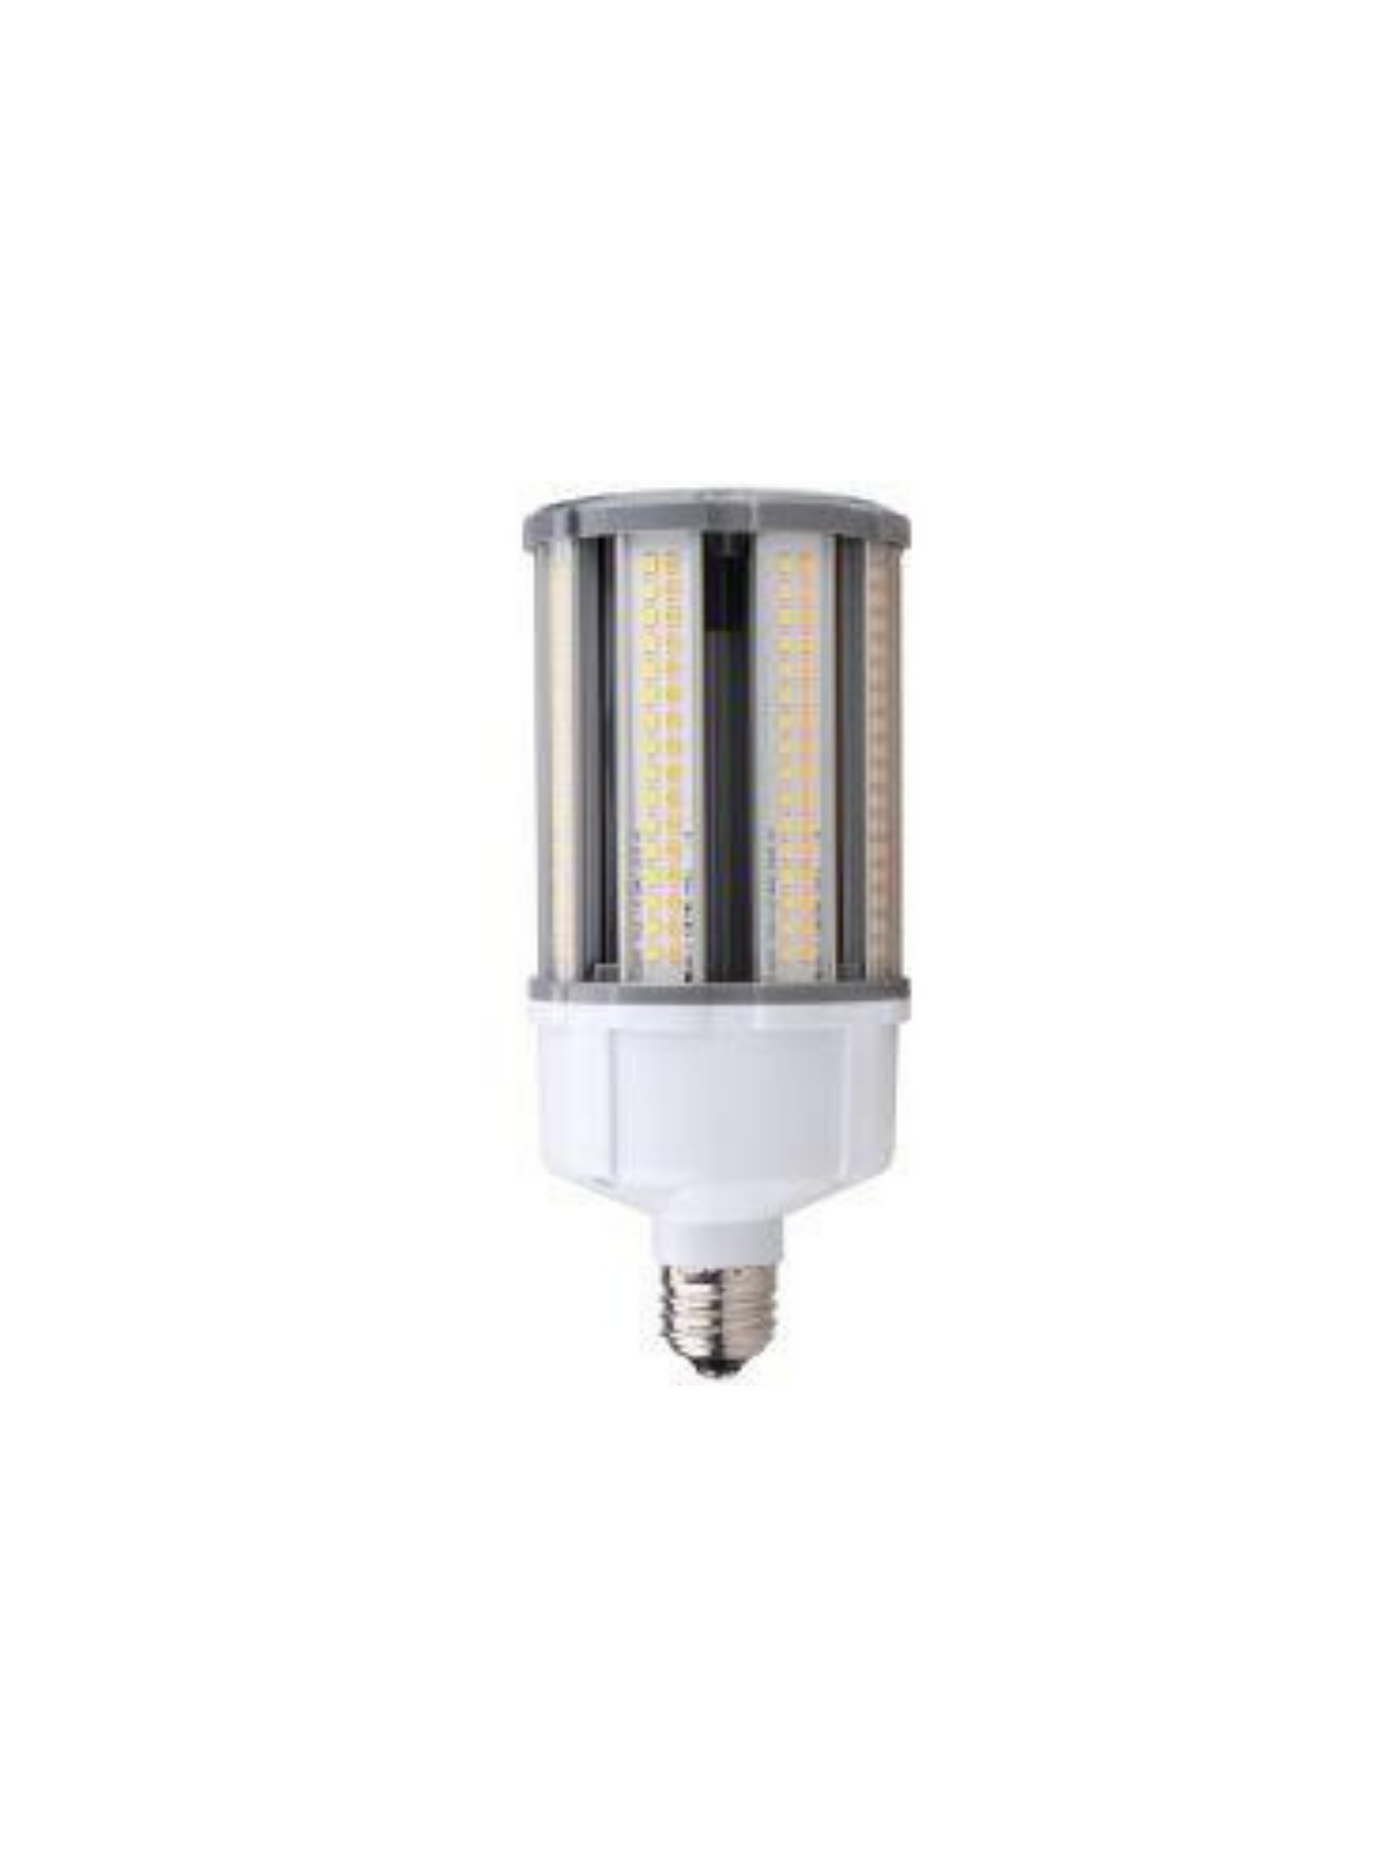 LED Corn Bulb 3CCT + 3 Power Select IP64 Clear Lens, E26 Base